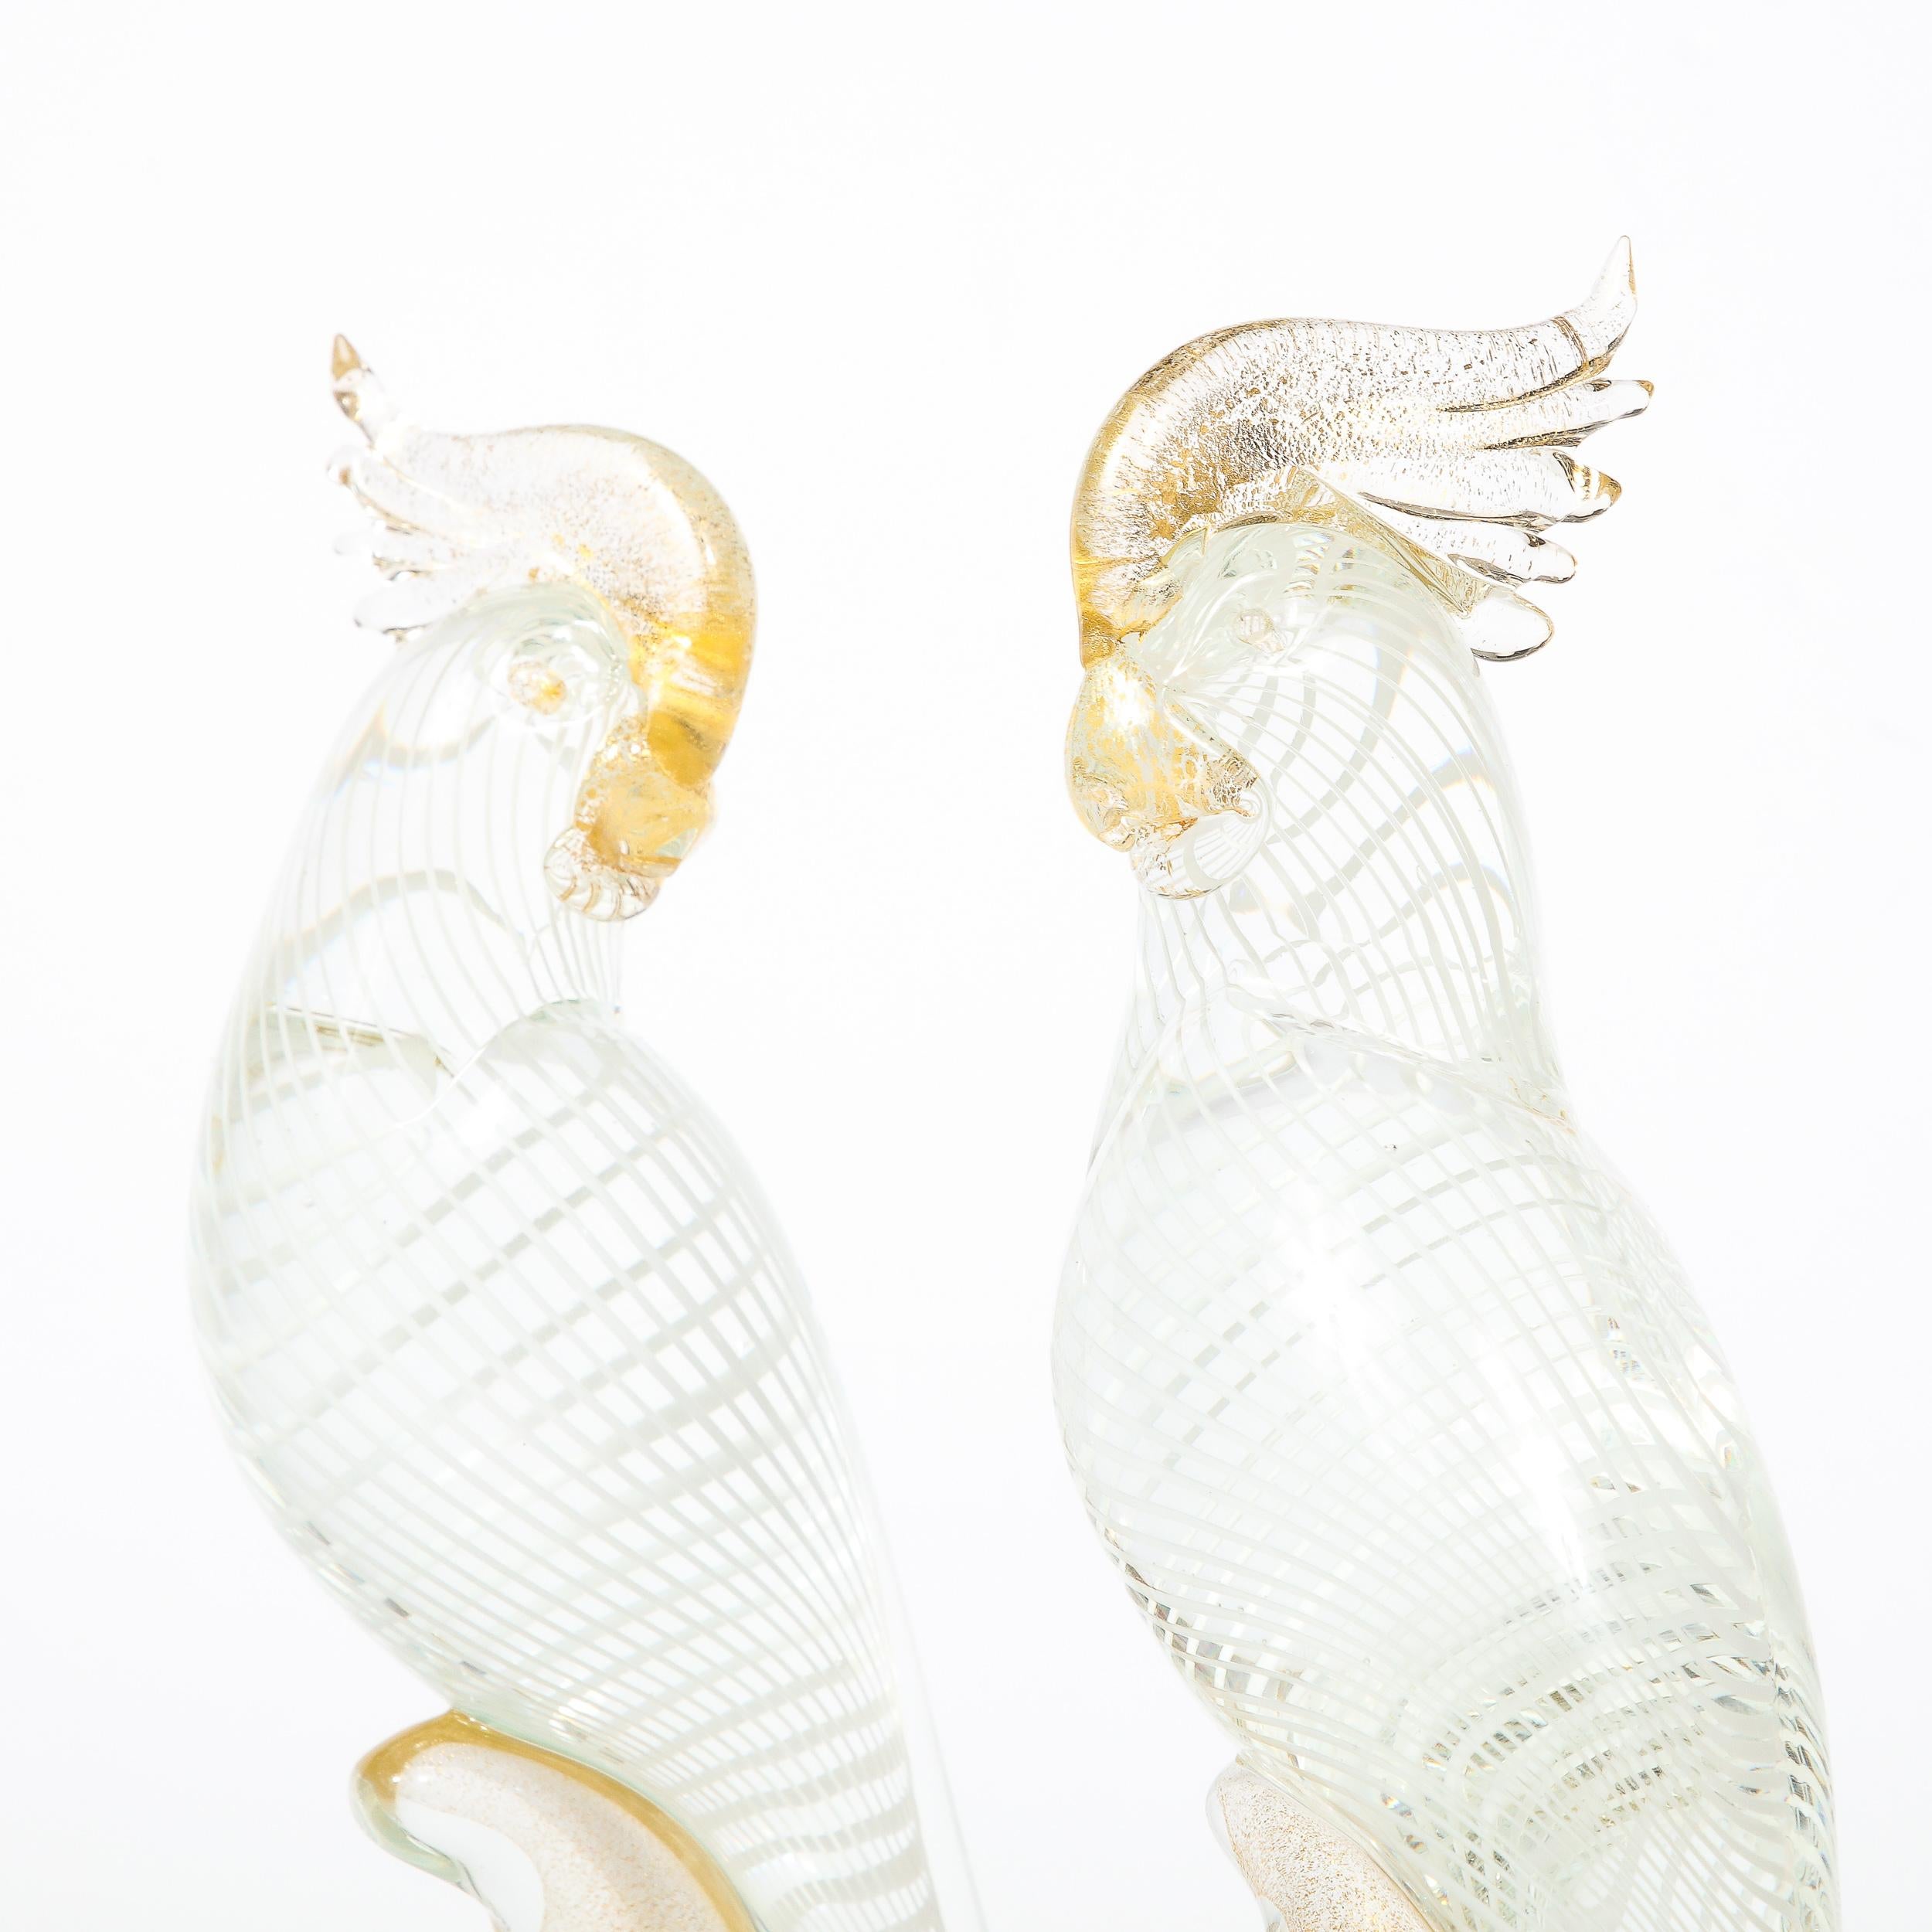 Hand-Blown Murano Glass Cockatiels w/ Filigree Details and 24 Karat Gold Flecks 1